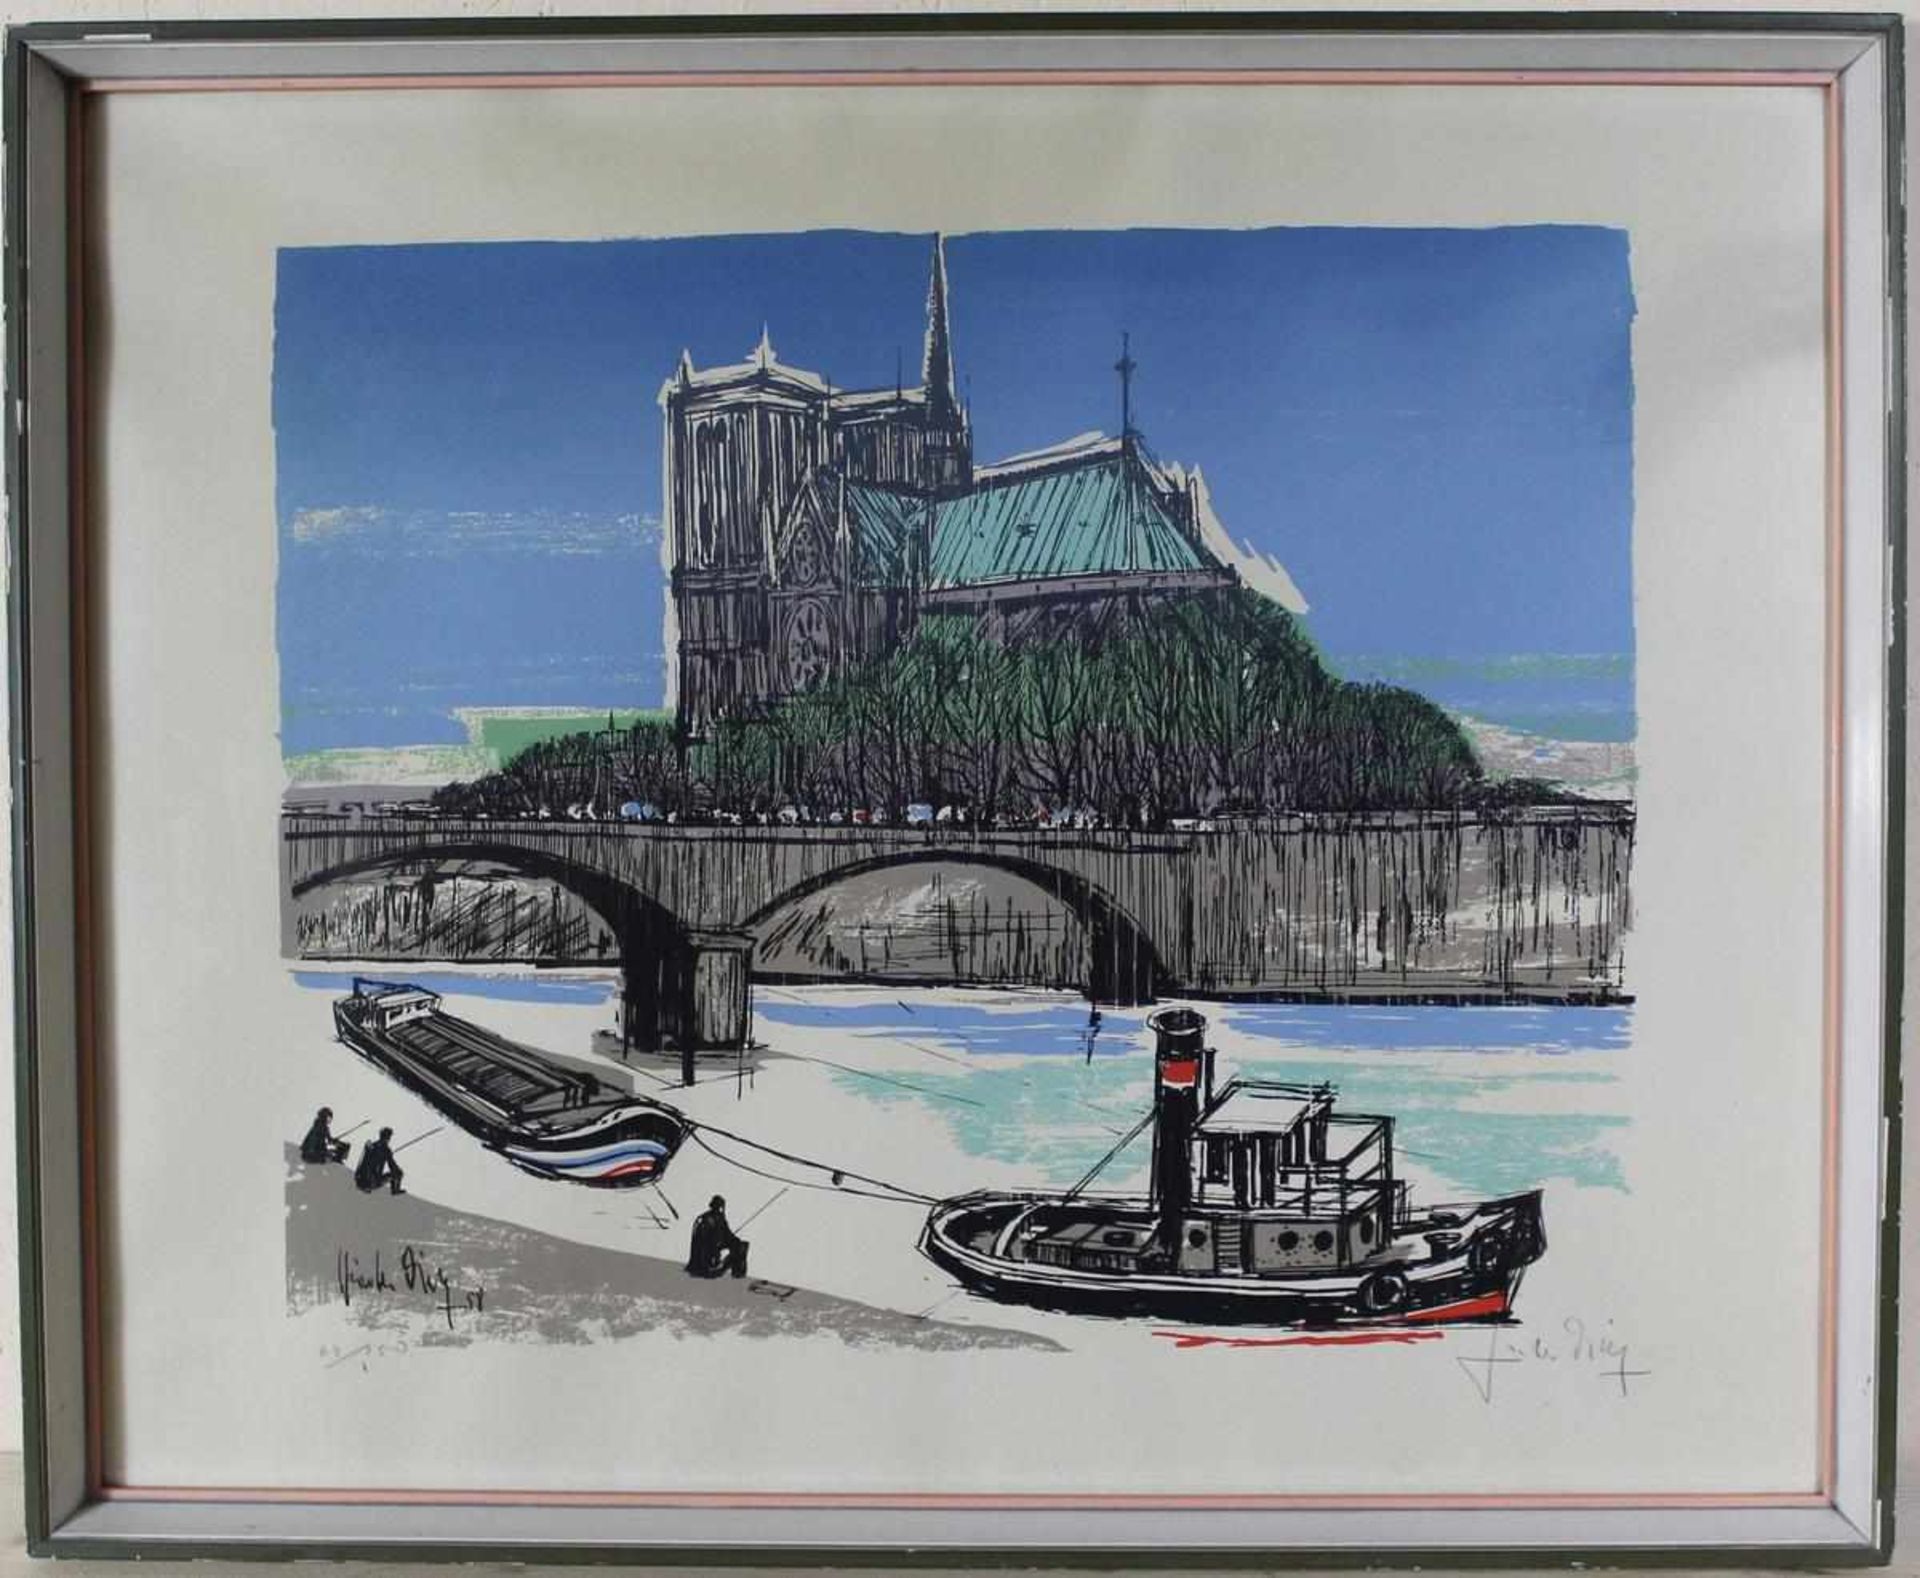 Farbholzschnitt Notre Dame in Paris, unles. sign. und dat. 58 (1958), unter Glas gerahmt, ca. 50 x